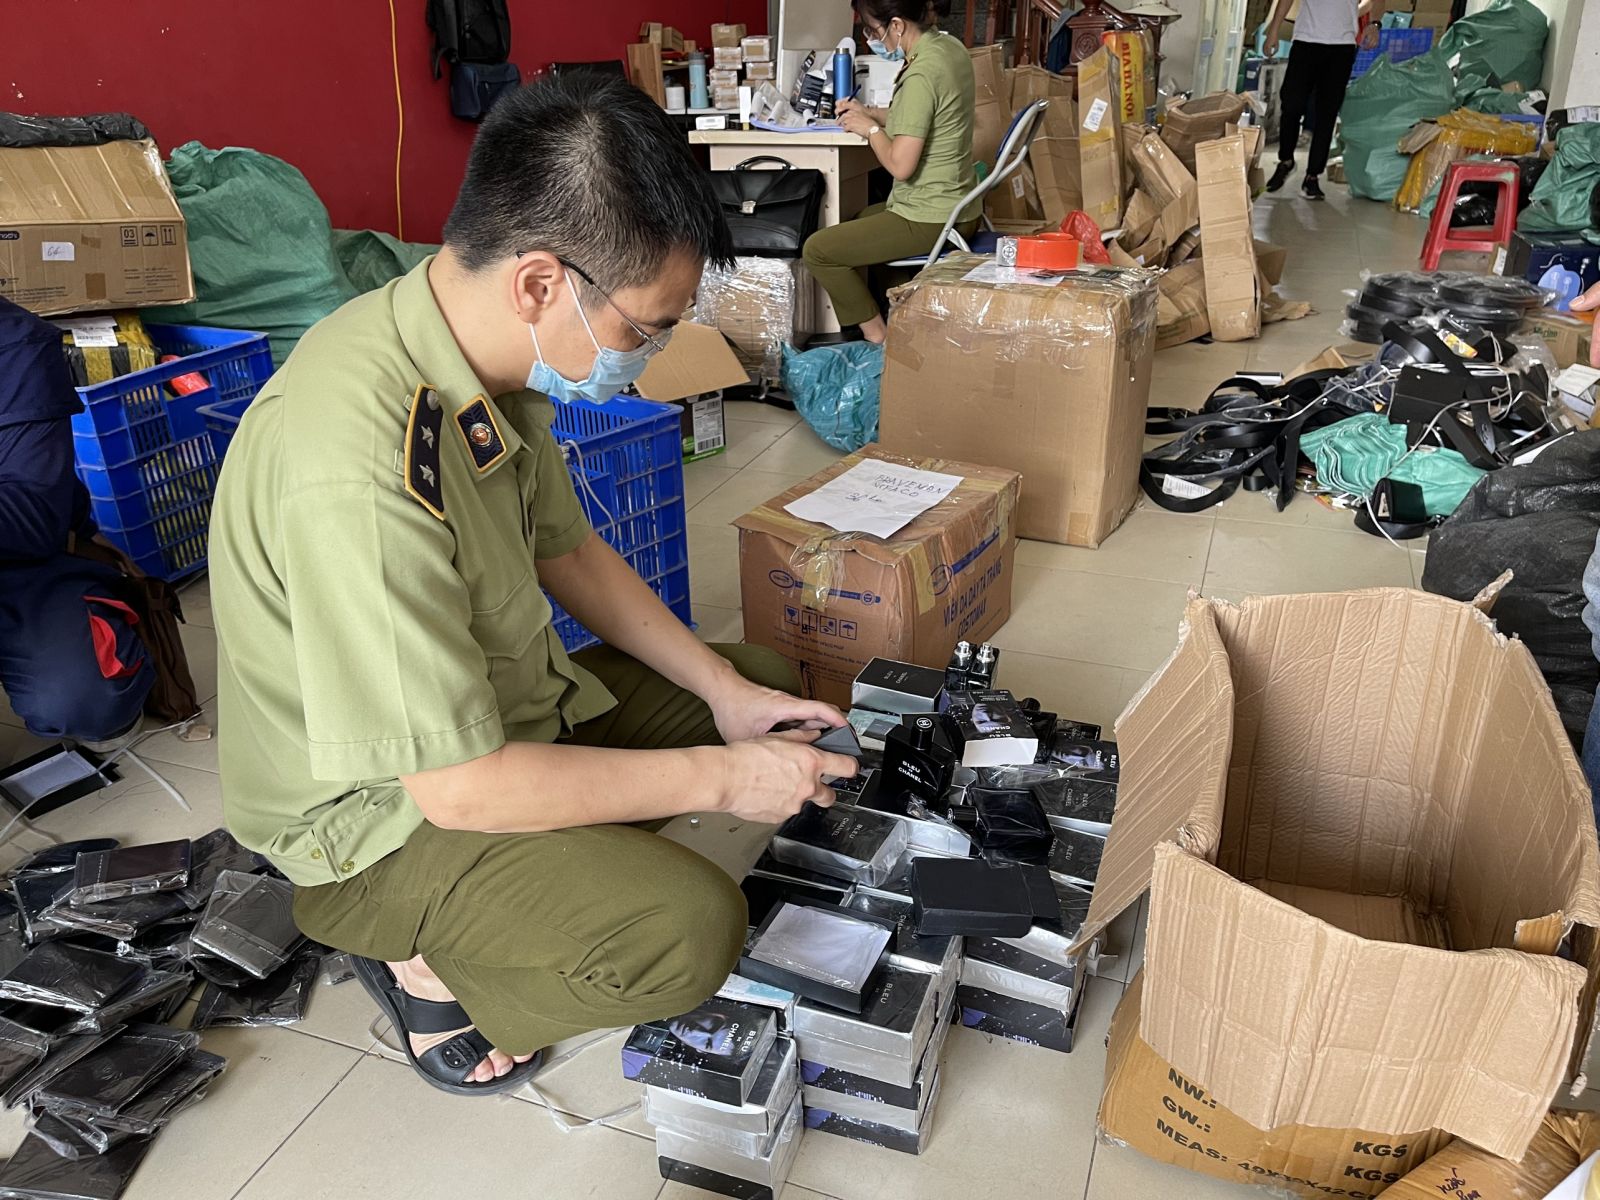 Hàng nghìn mỹ phẩm không hóa đơn chứng từ, giả mạo nhãn hiệu bị thu giữ tại Hà Nội